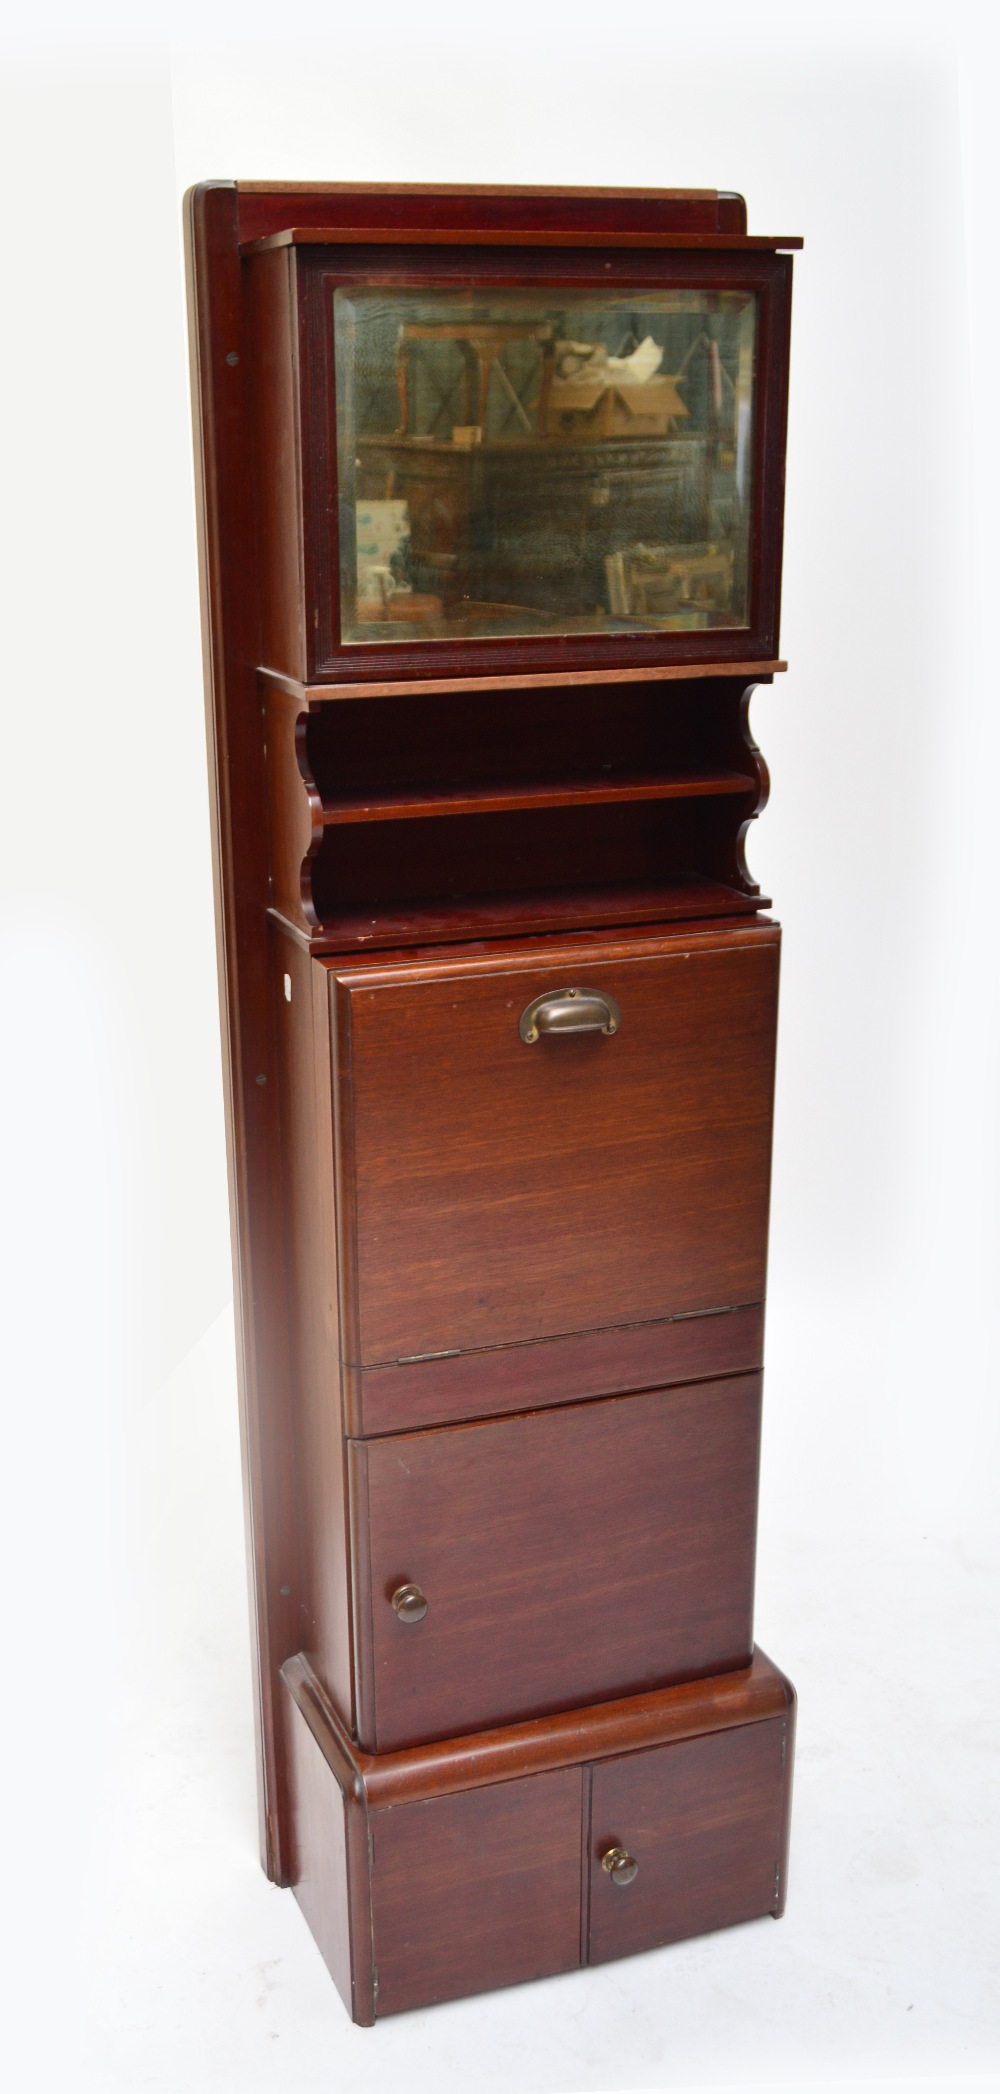 An early 20th century mahogany railway sleeper vanity unit,